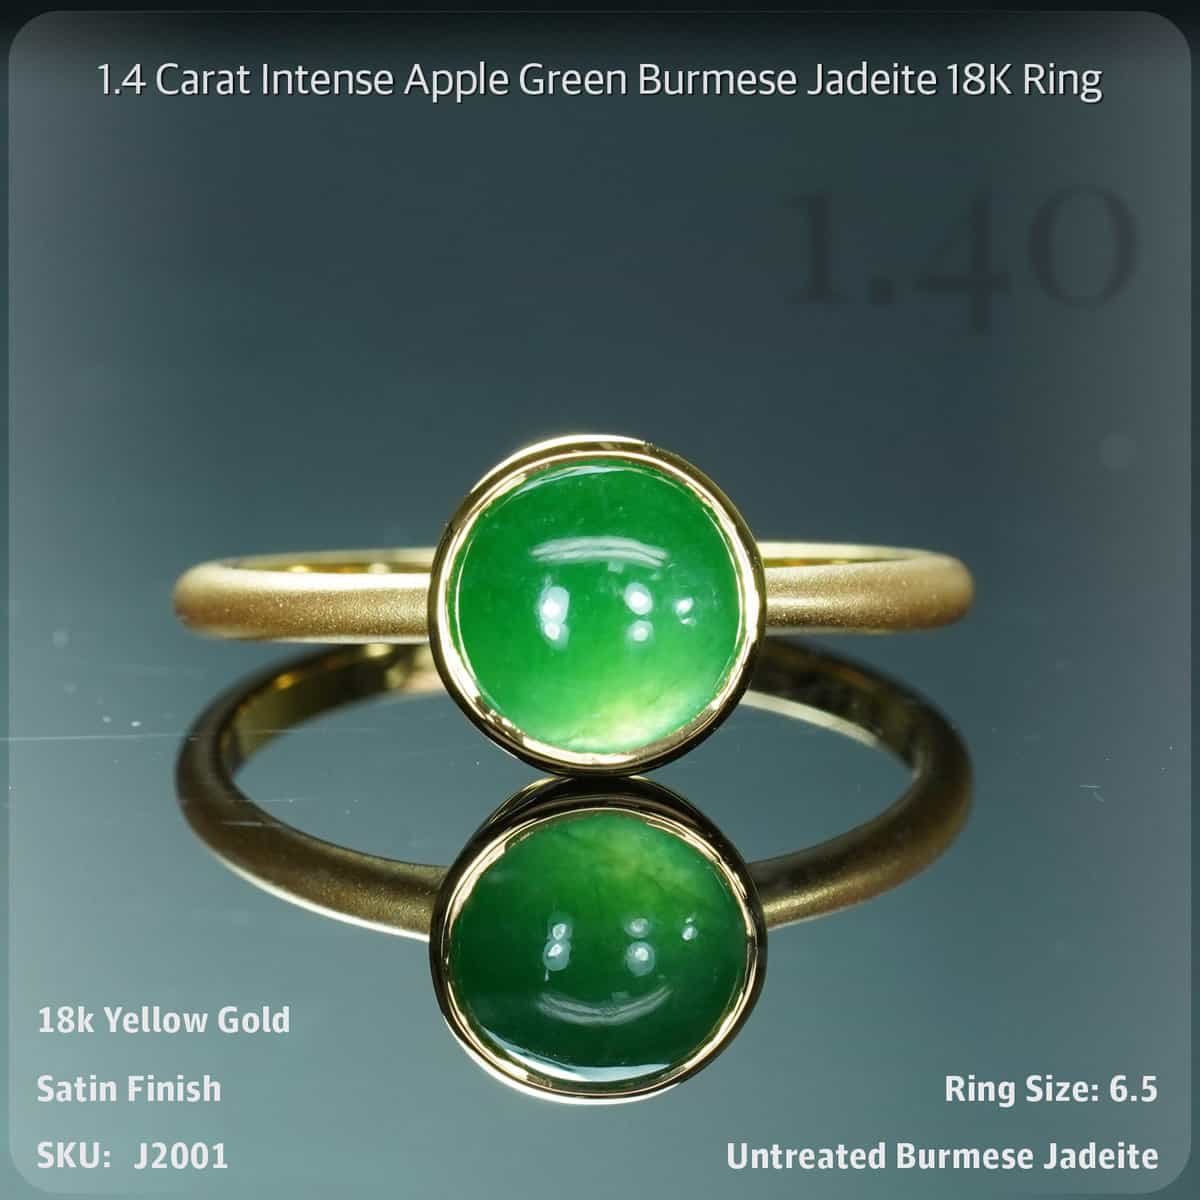 1.4 Carat Intense Apple Green Burmese Jadeite 18K Ring